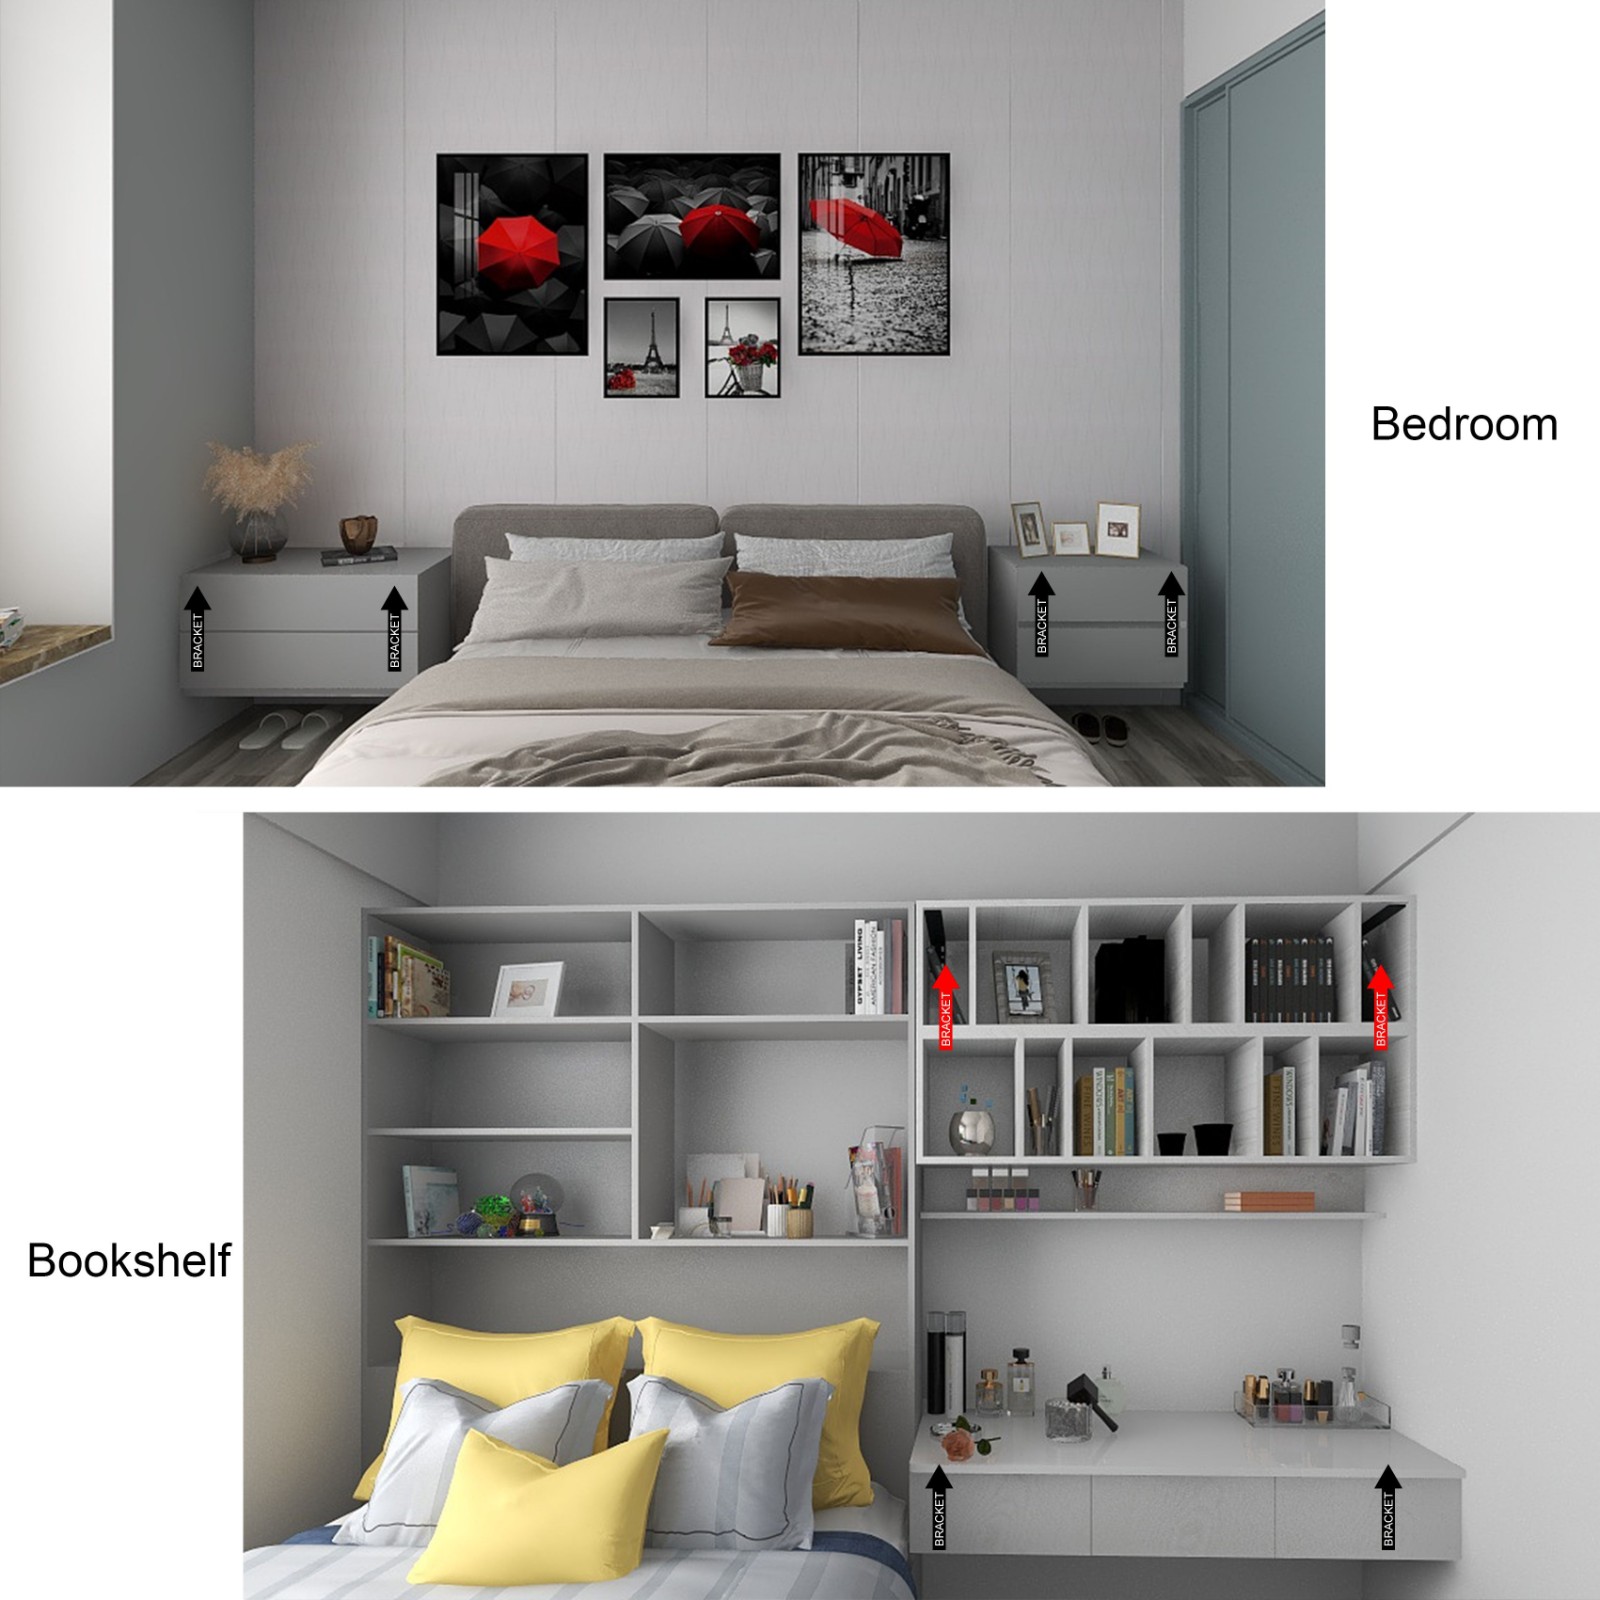 Bedroom&Bookshelf(1).jpg